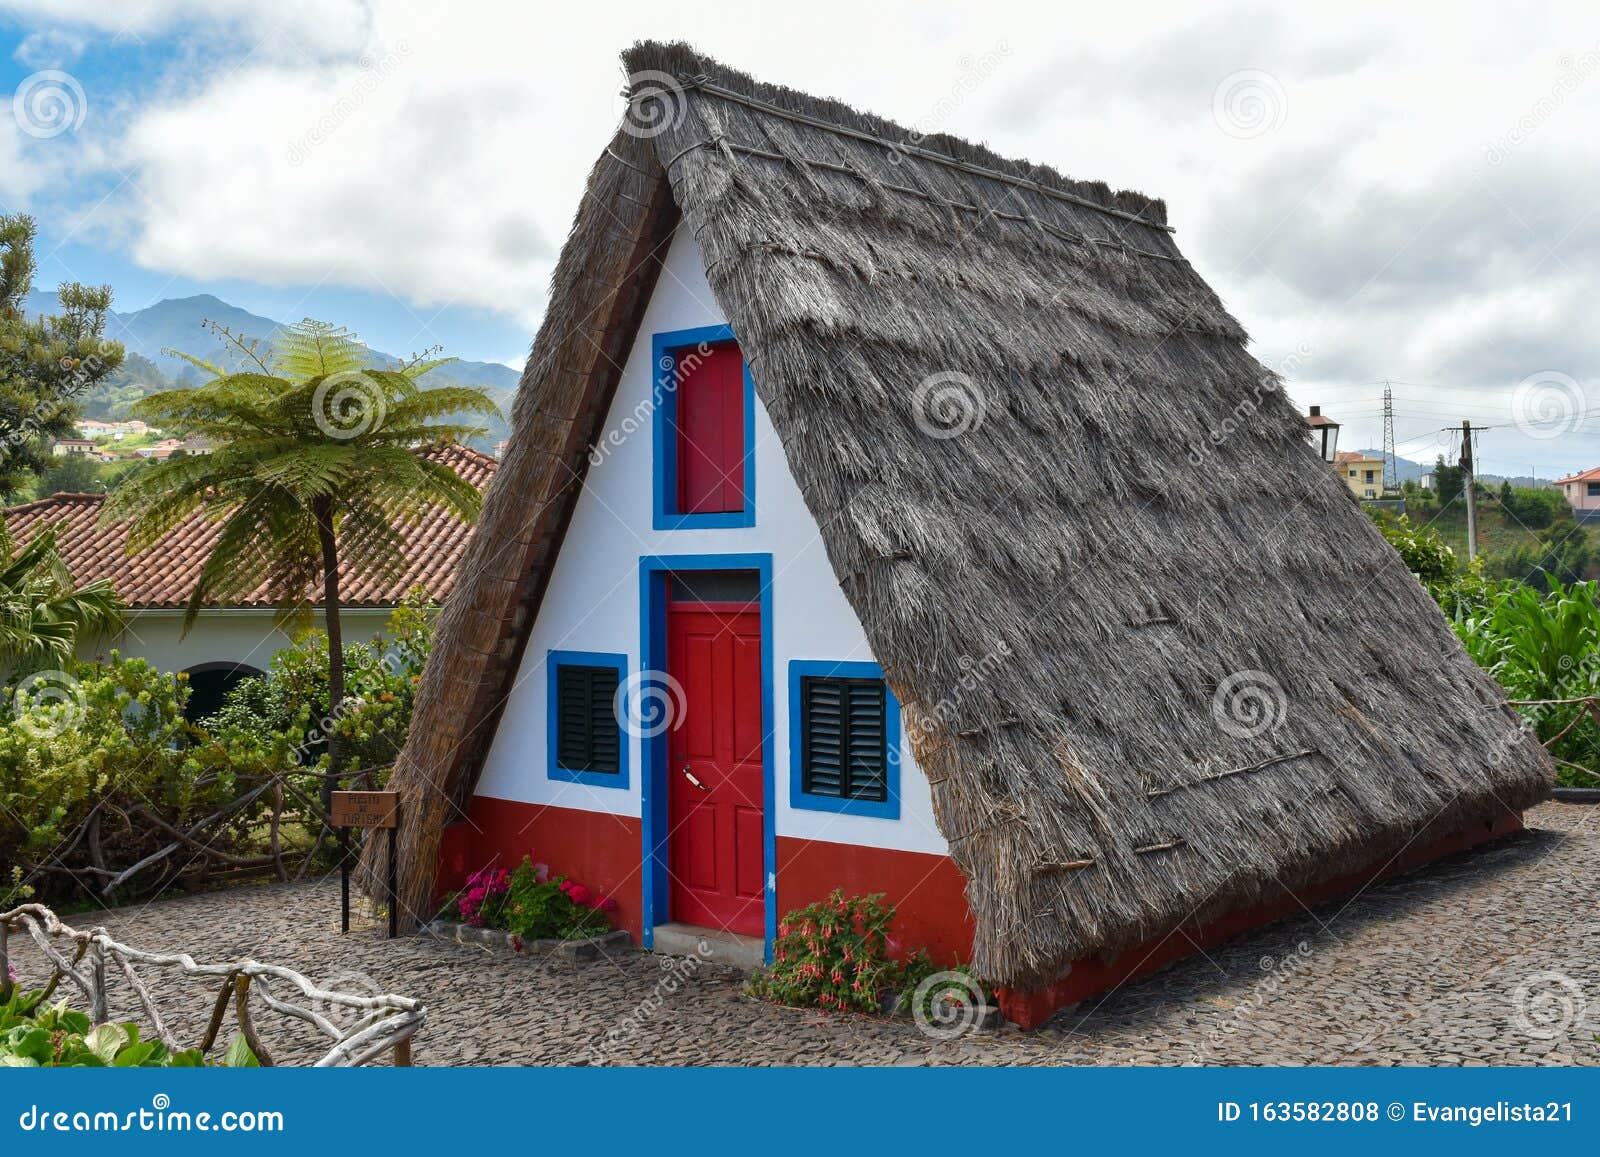 madeira island traditional houses. casas tipicas de santana